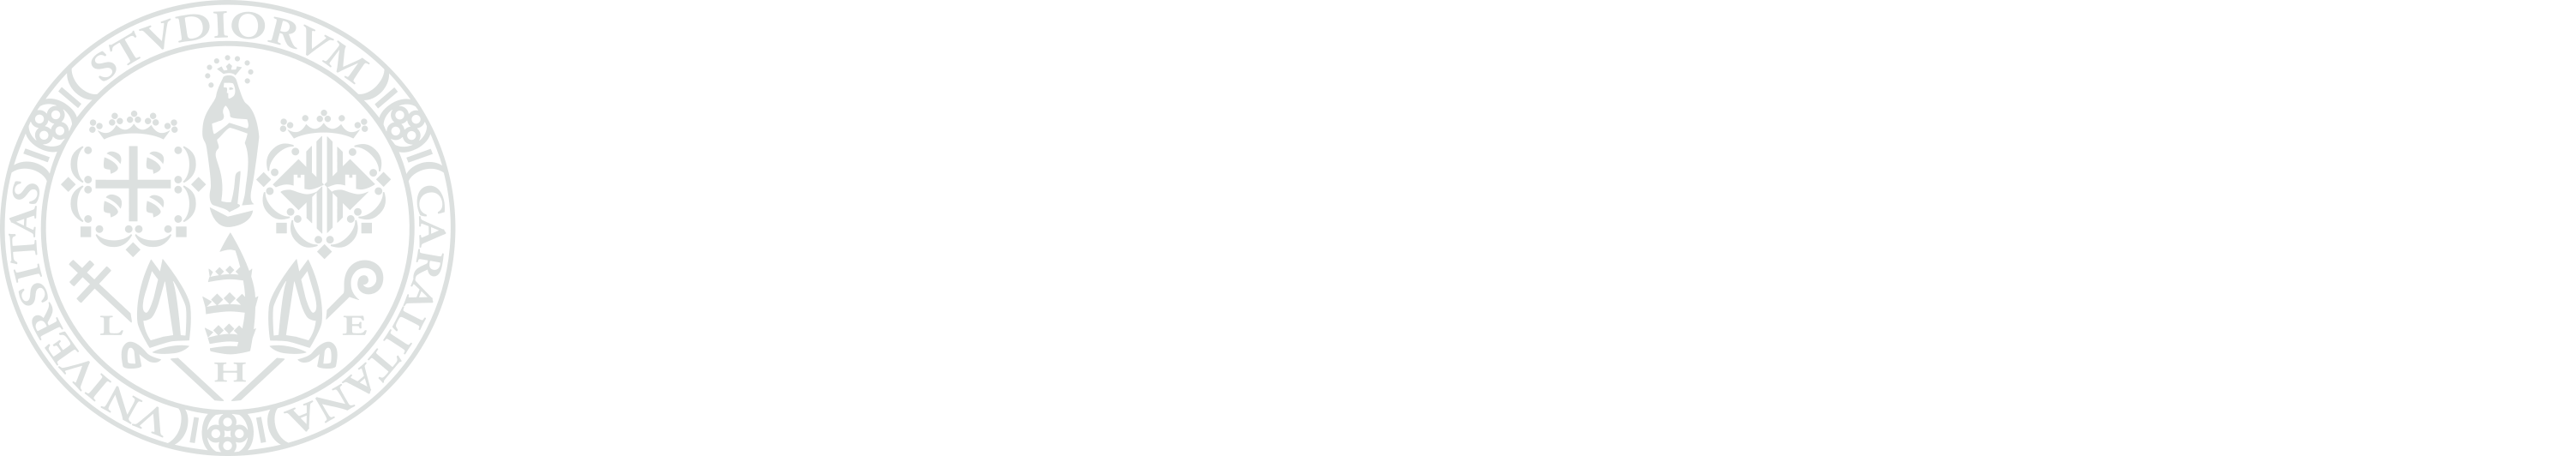 Cagliari University logo